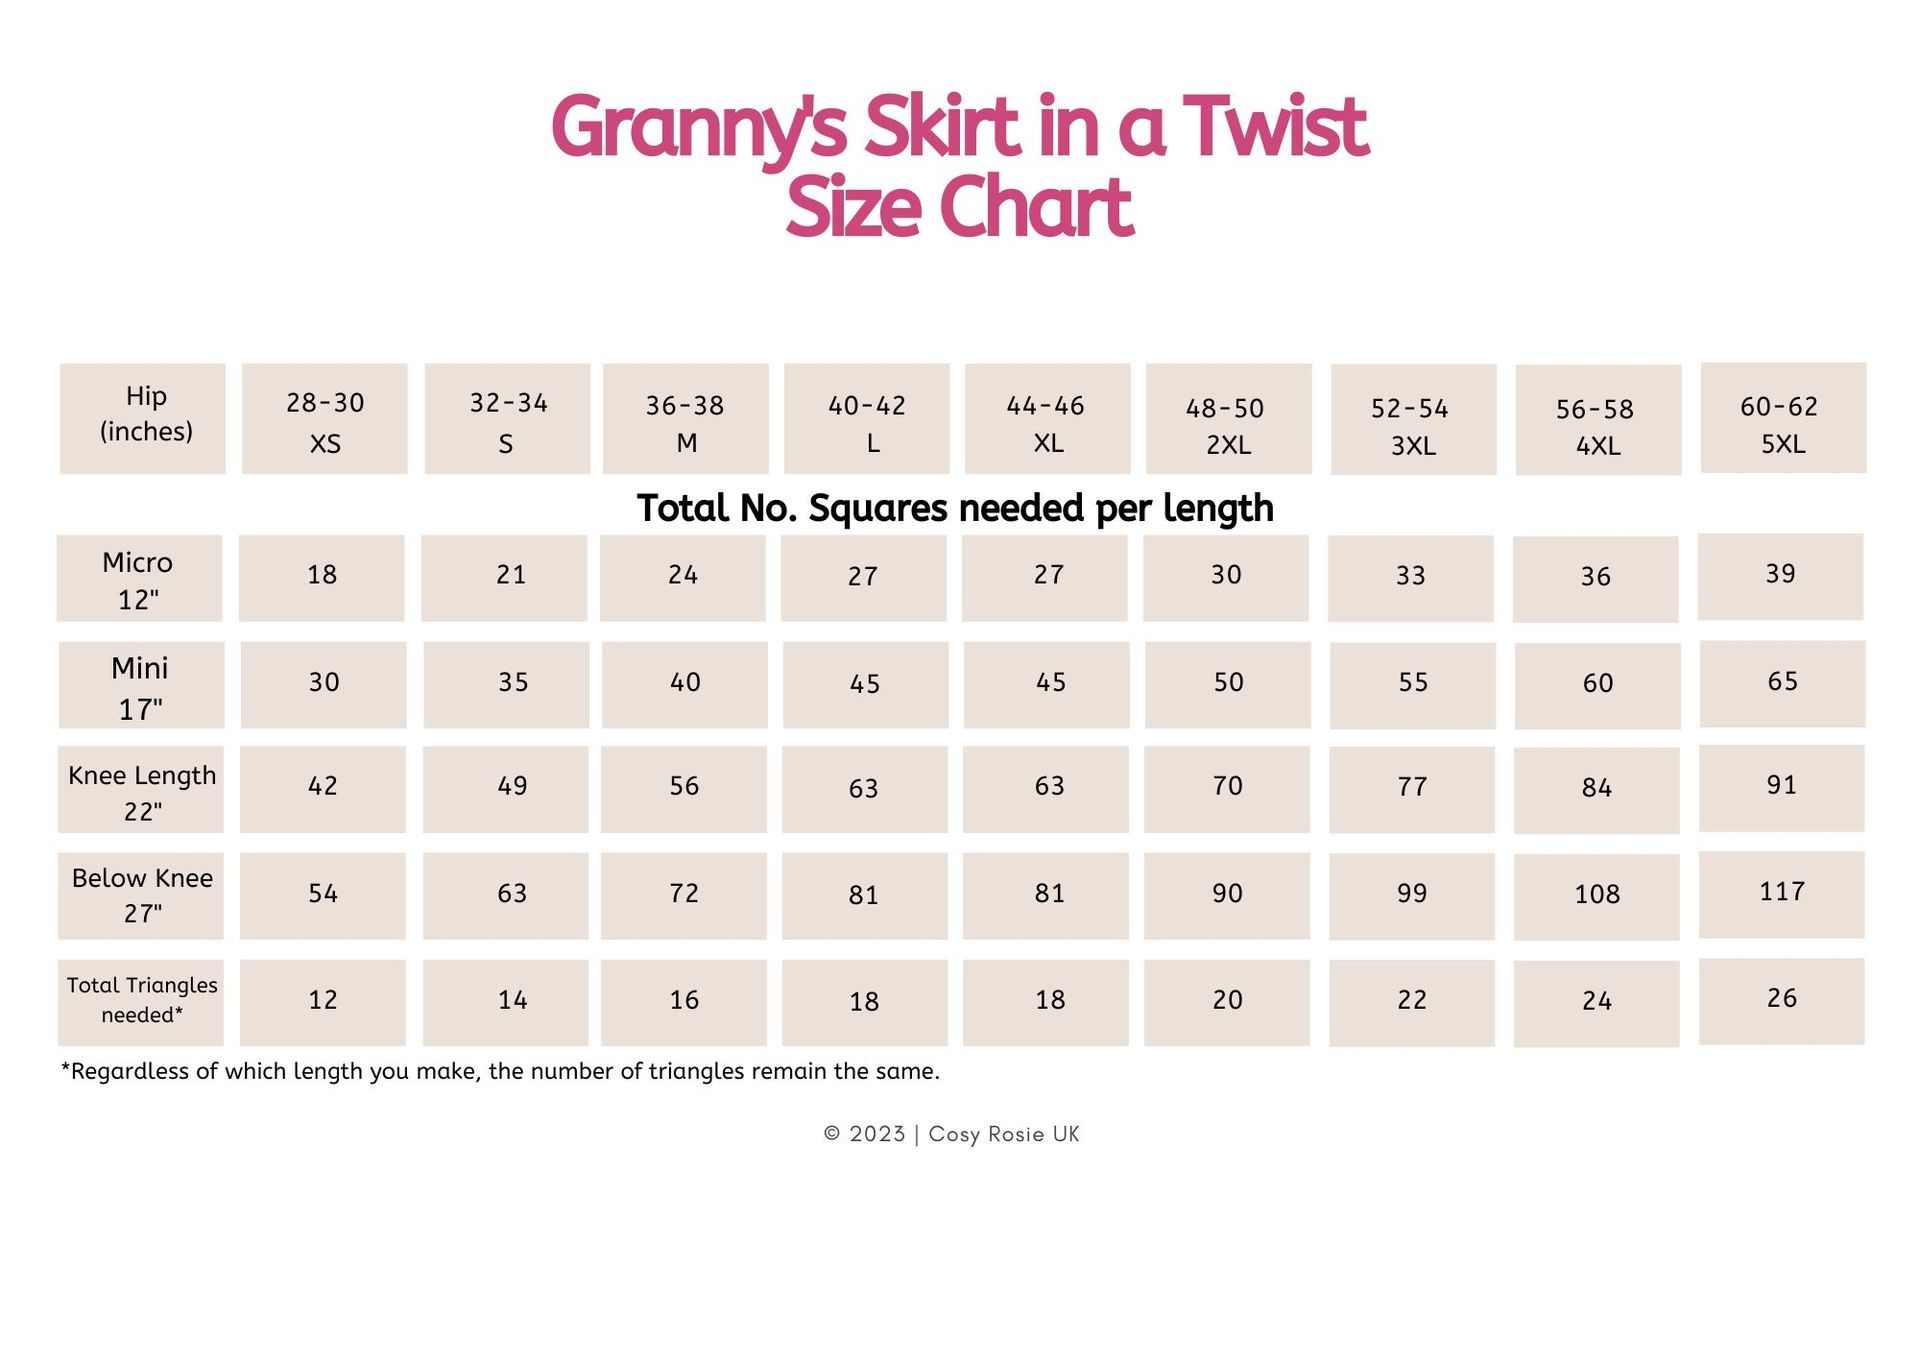 Granny Squares needed for crochet skirt